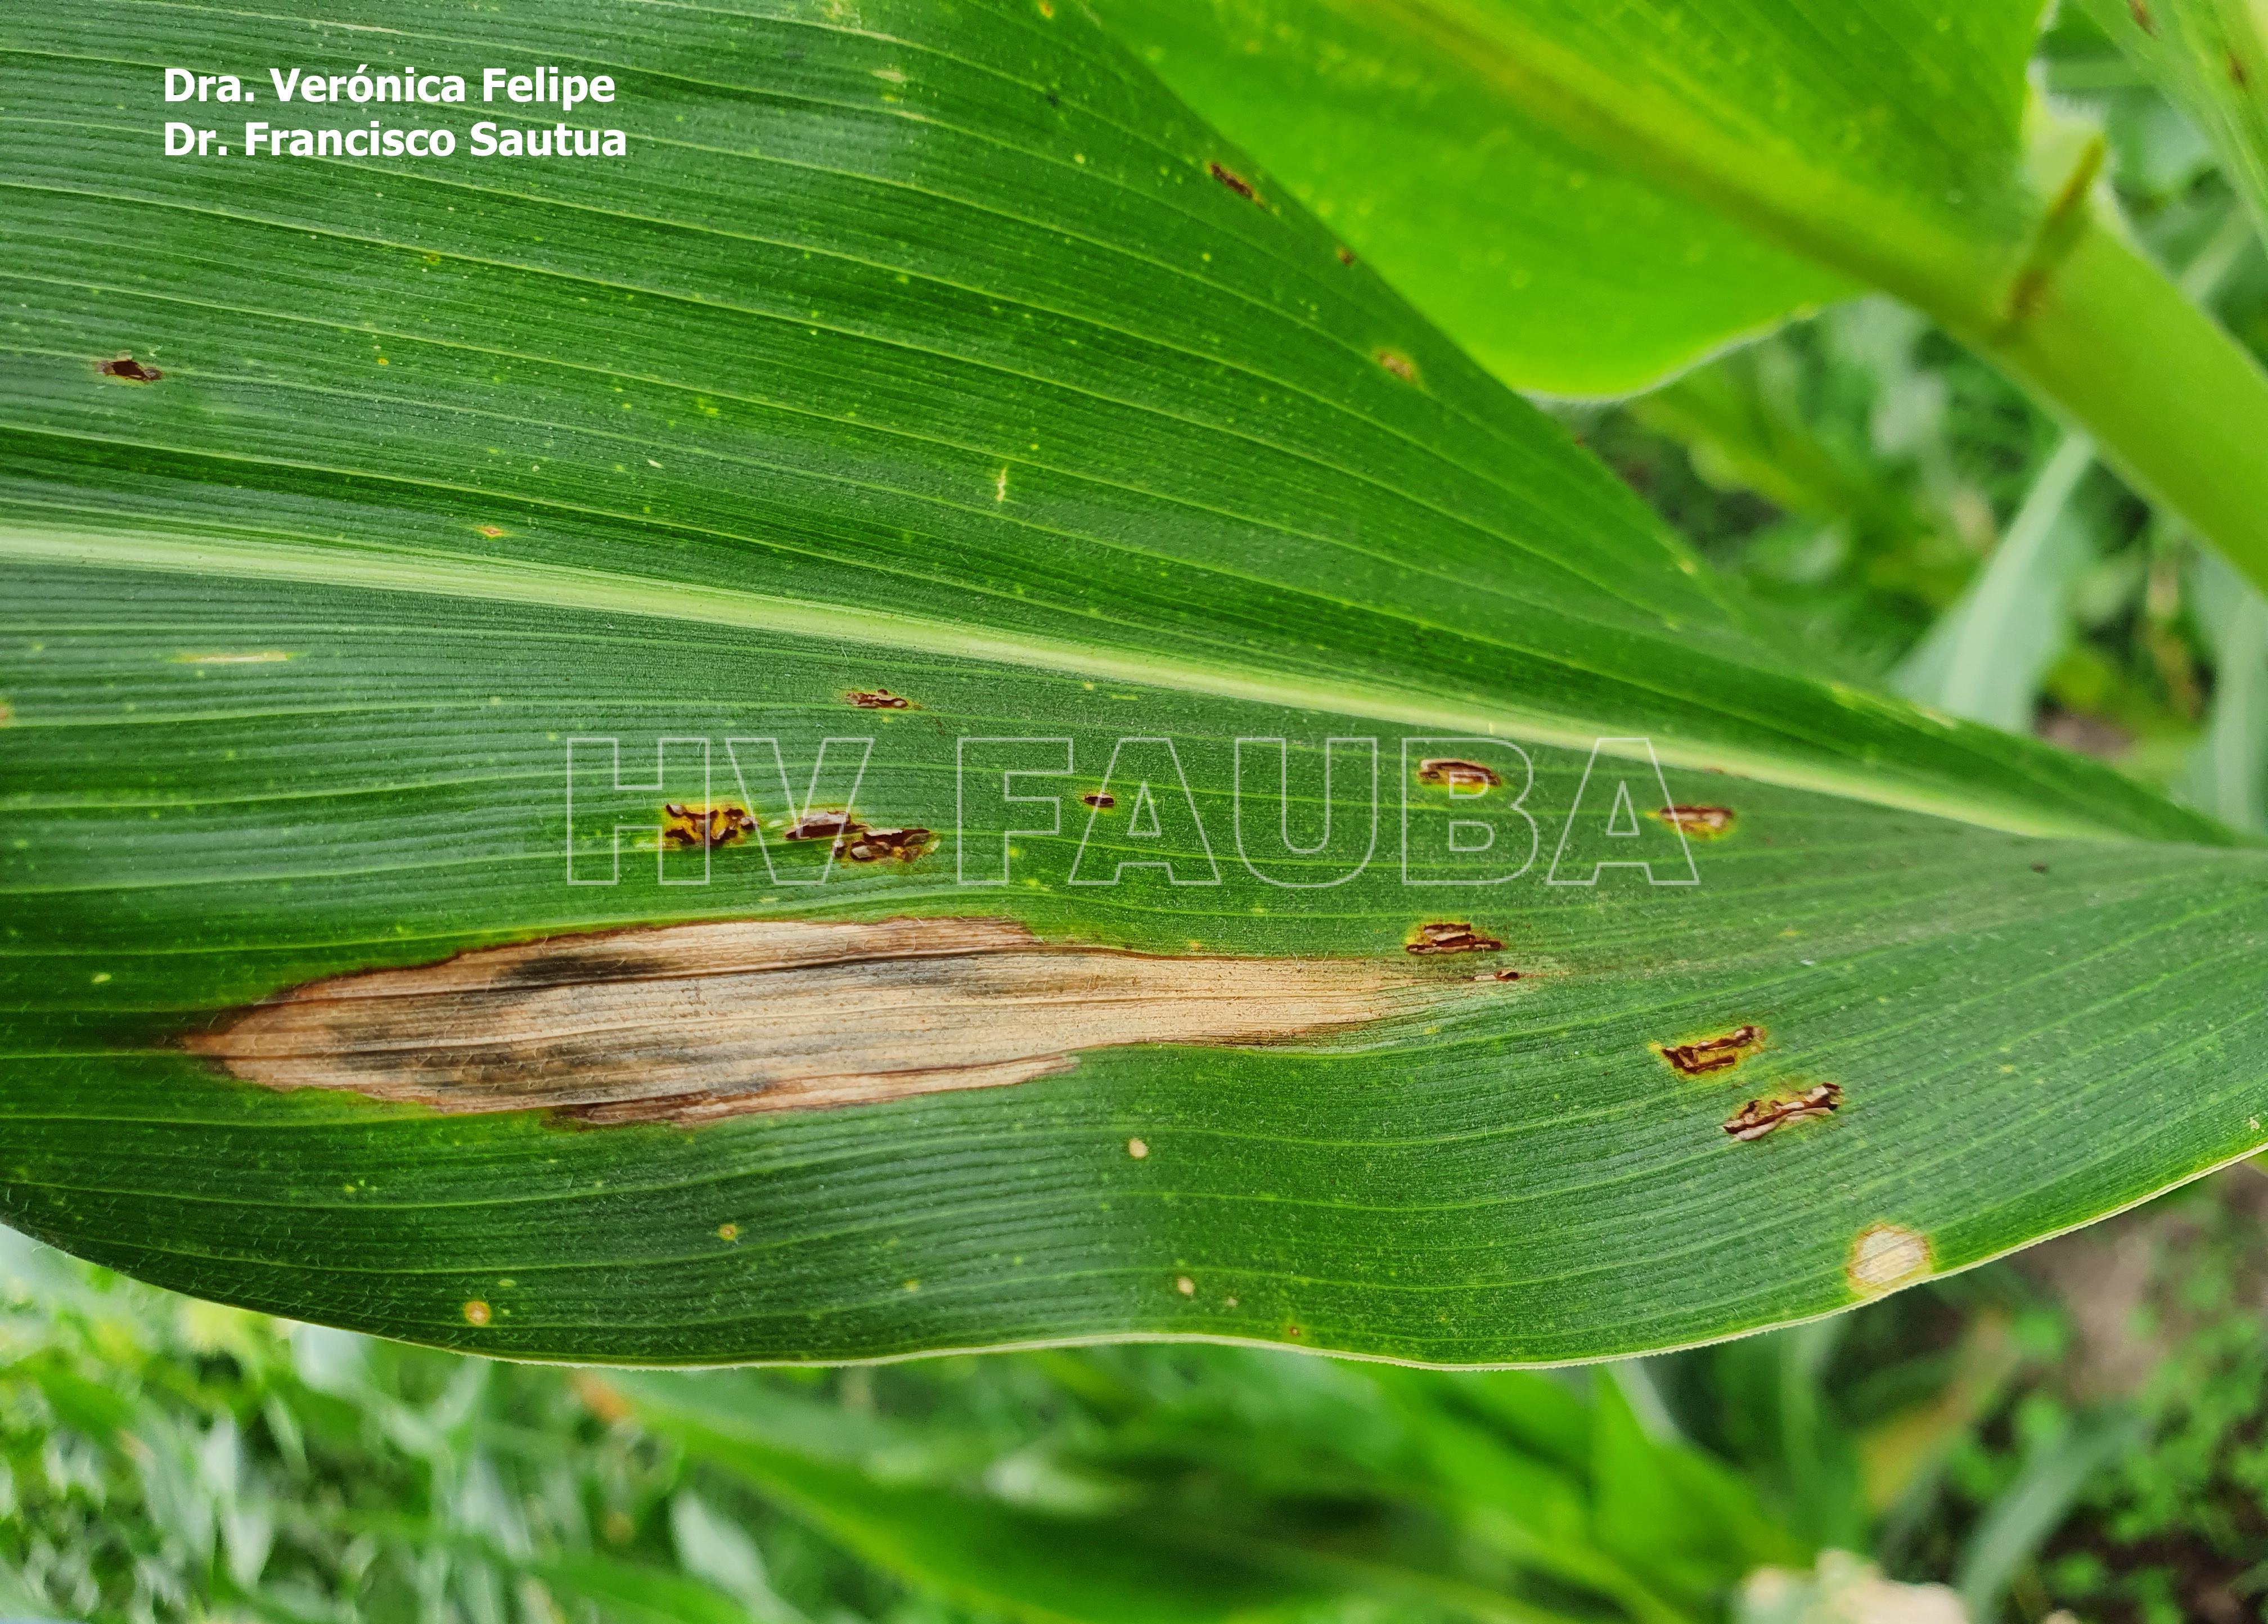 Lesión de tizón común del maíz causado por Exserohilum turcicum, rodeada por pústulas uredosóricas de la roya común del maíz, causada por Puccinia sorghi. Autores: Dra. Verónica Felipe, Dr. Francisco Sautua